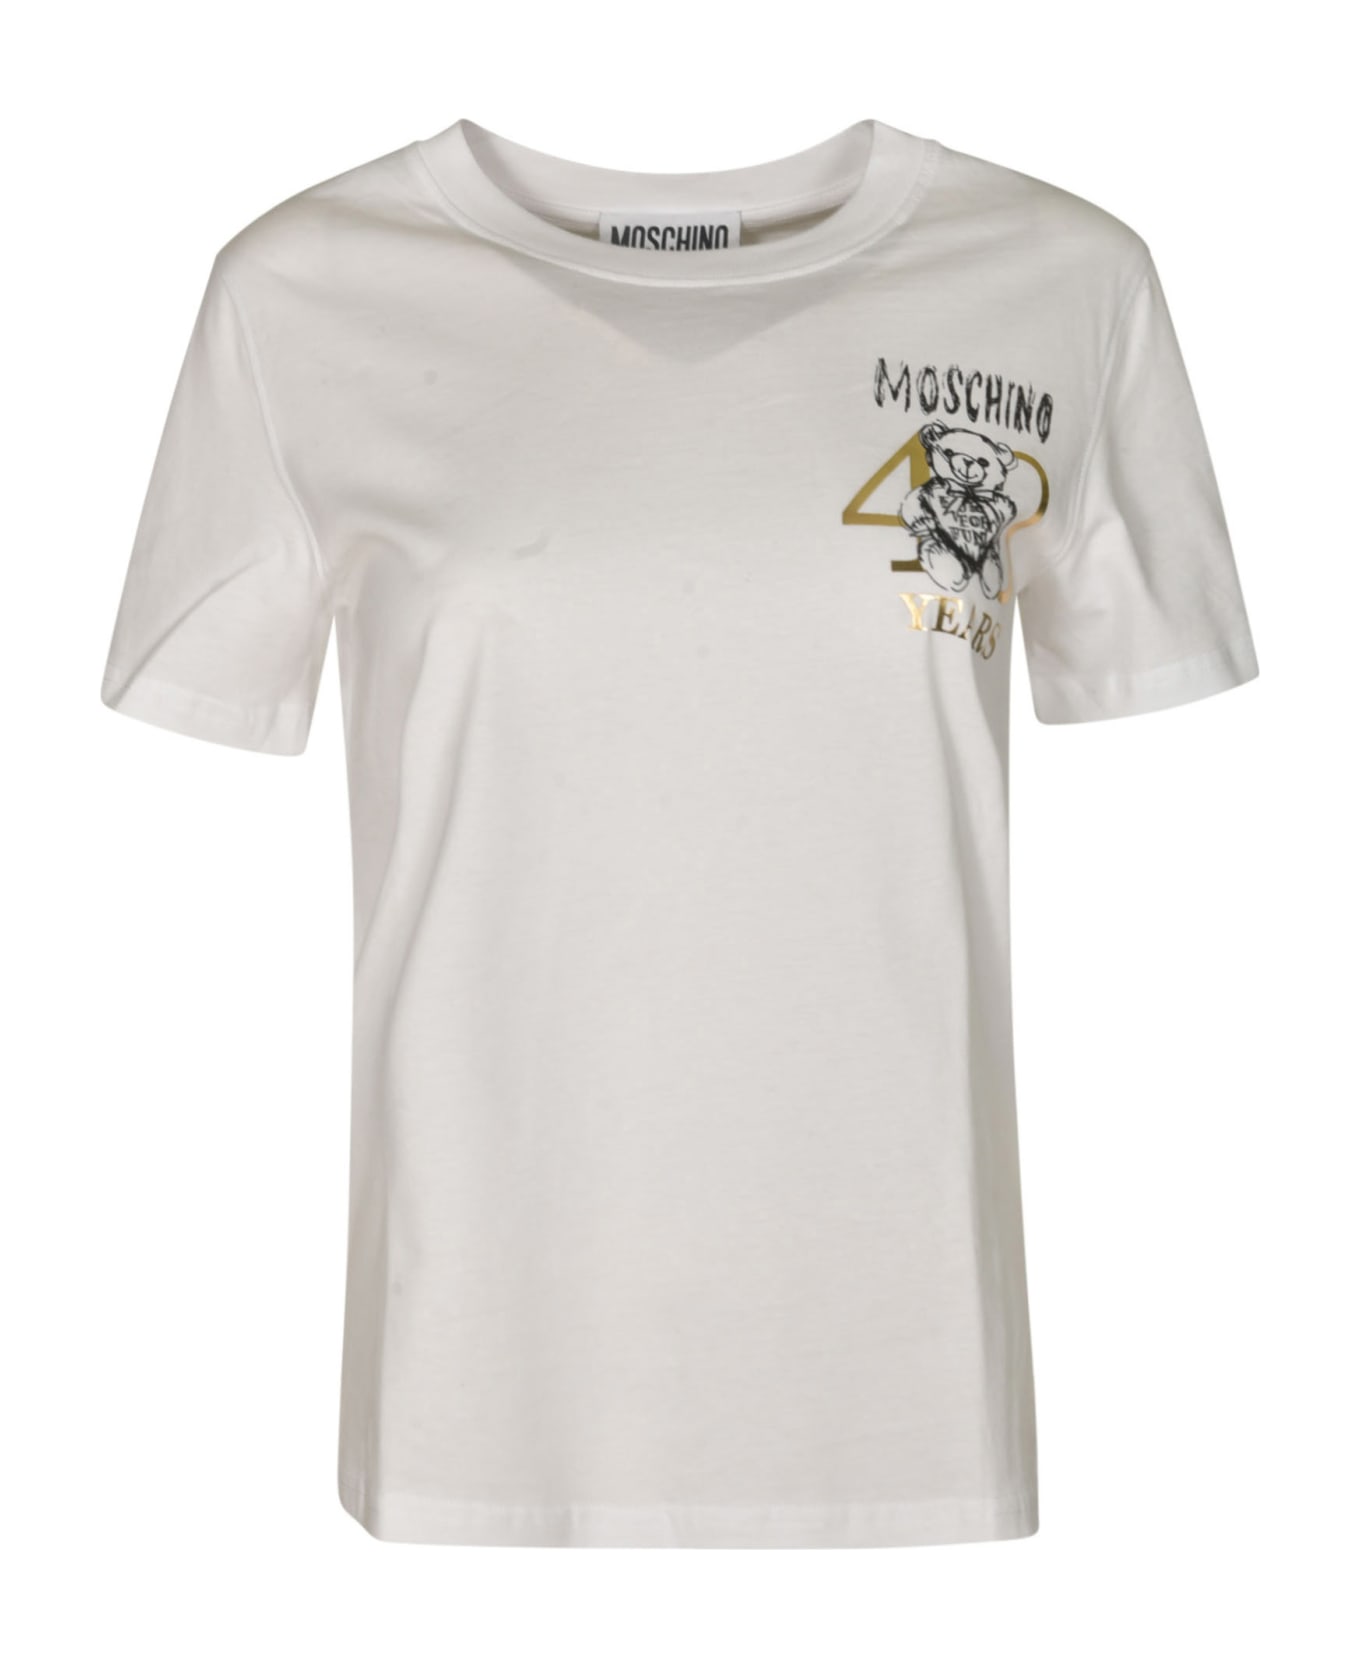 Moschino Teddy 40 Years Of Love T-shirt - White